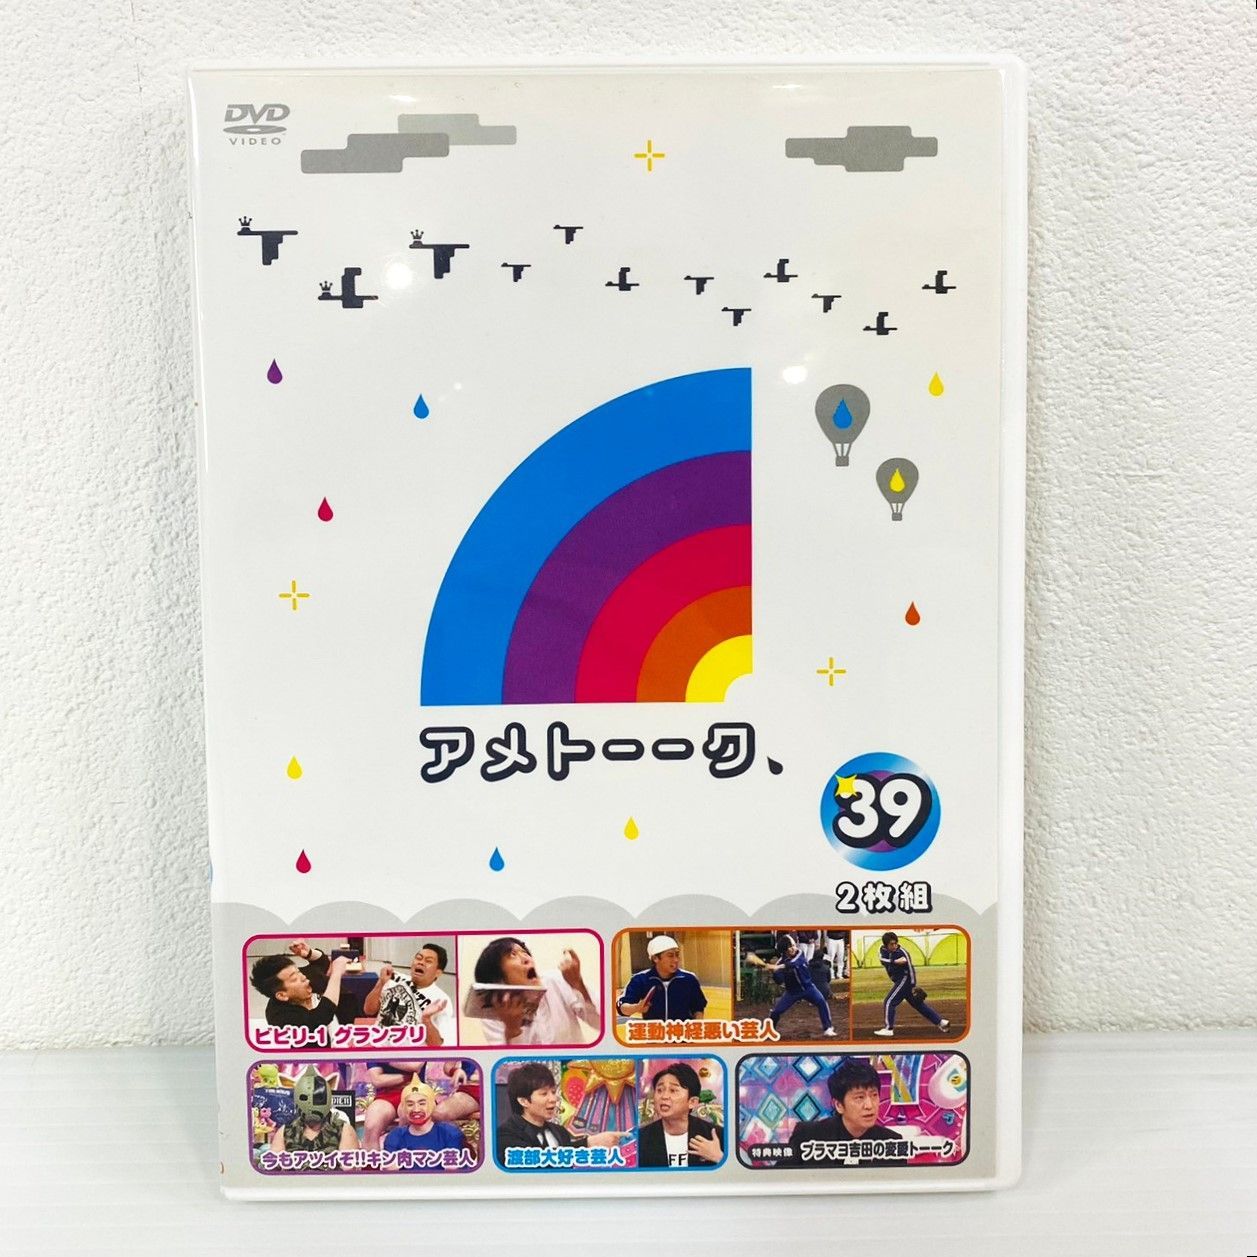 ◇【中古】アメトーーク DVD Vol.39 アメトーク ビビリ-1 グランプリ 